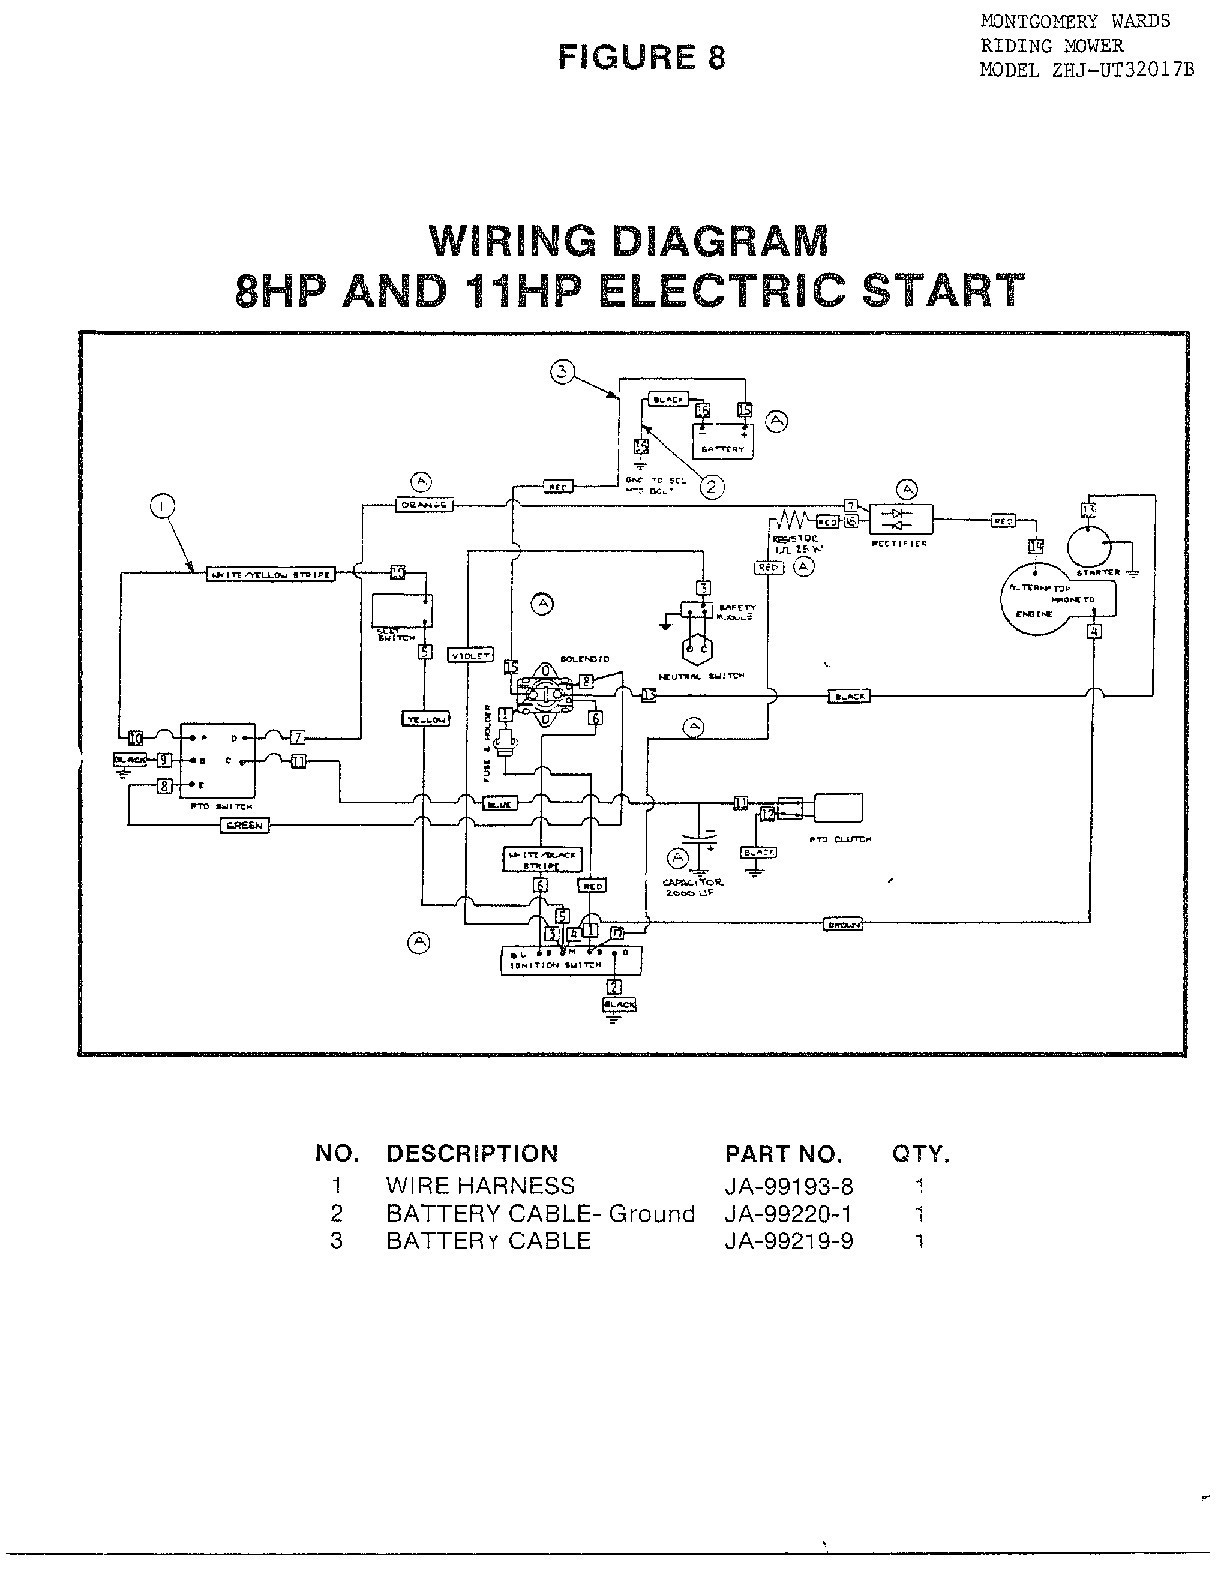 Powerflex 700 Wiring Diagram from schematron.org